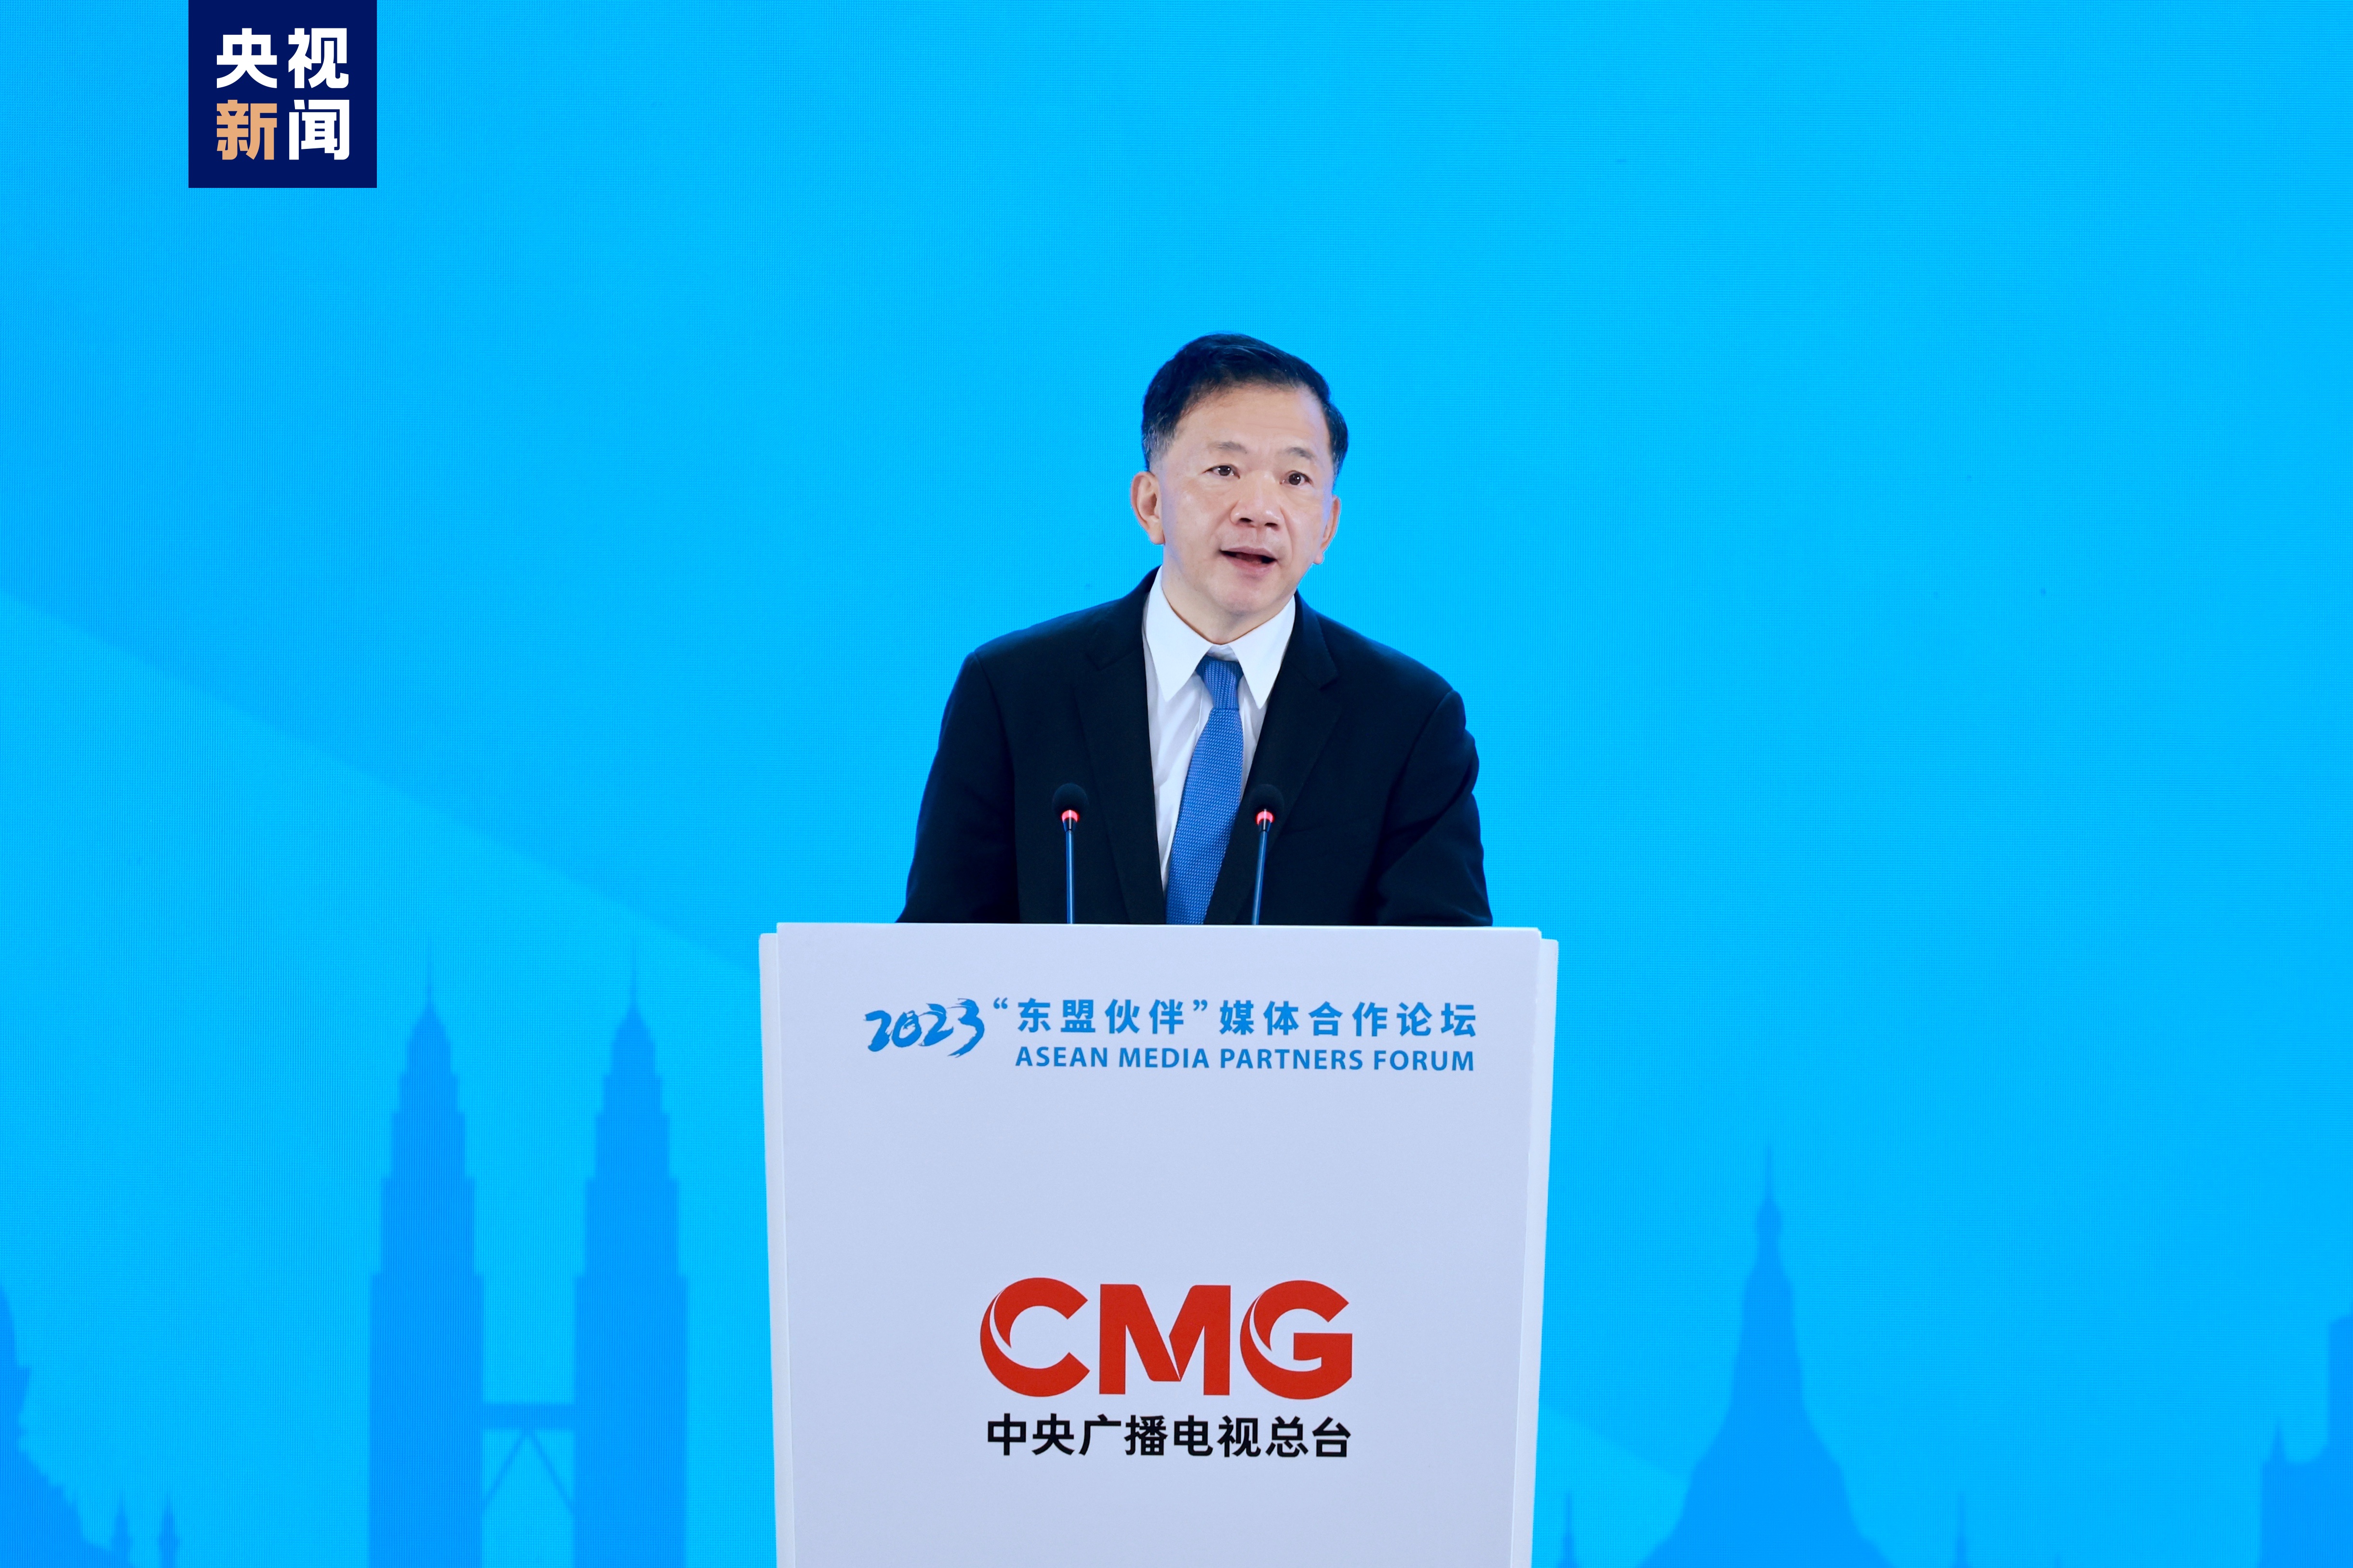 Prezes CMG, Shen Haixiong, przemawia podczas ceremonii otwarcia Forum Partnerów Medialnych ASEAN 2023 w Nanning w regionie autonomicznym Guangxi Zhuang w południowych Chinach, 6 czerwca 2023 r.  /CMG